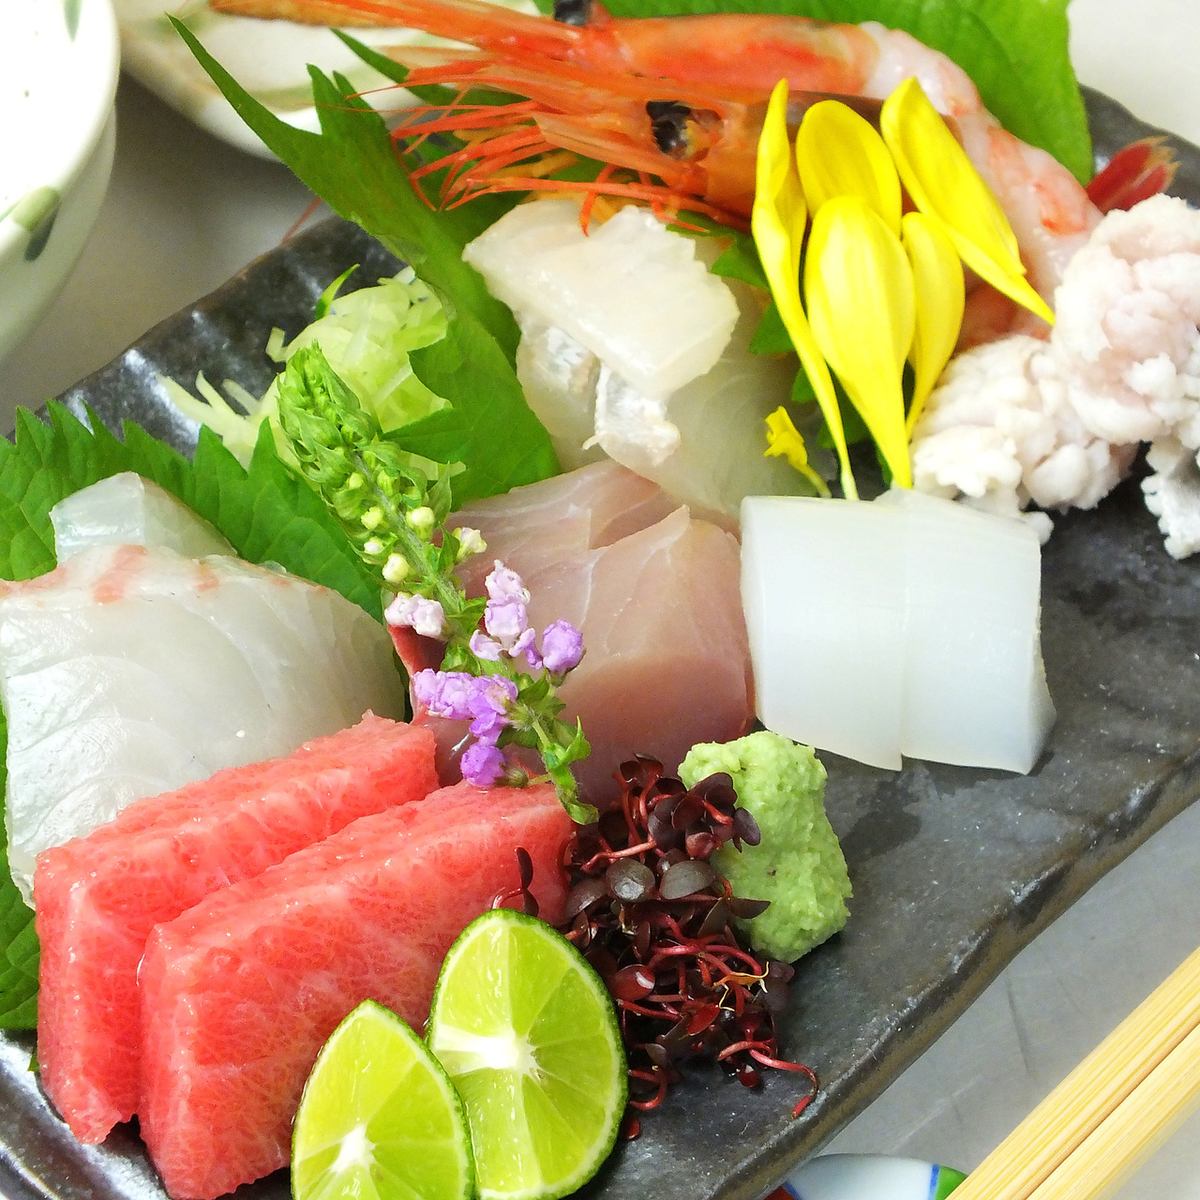 由經過京都烹飪和酒店培訓的店主提供的正宗日本料理